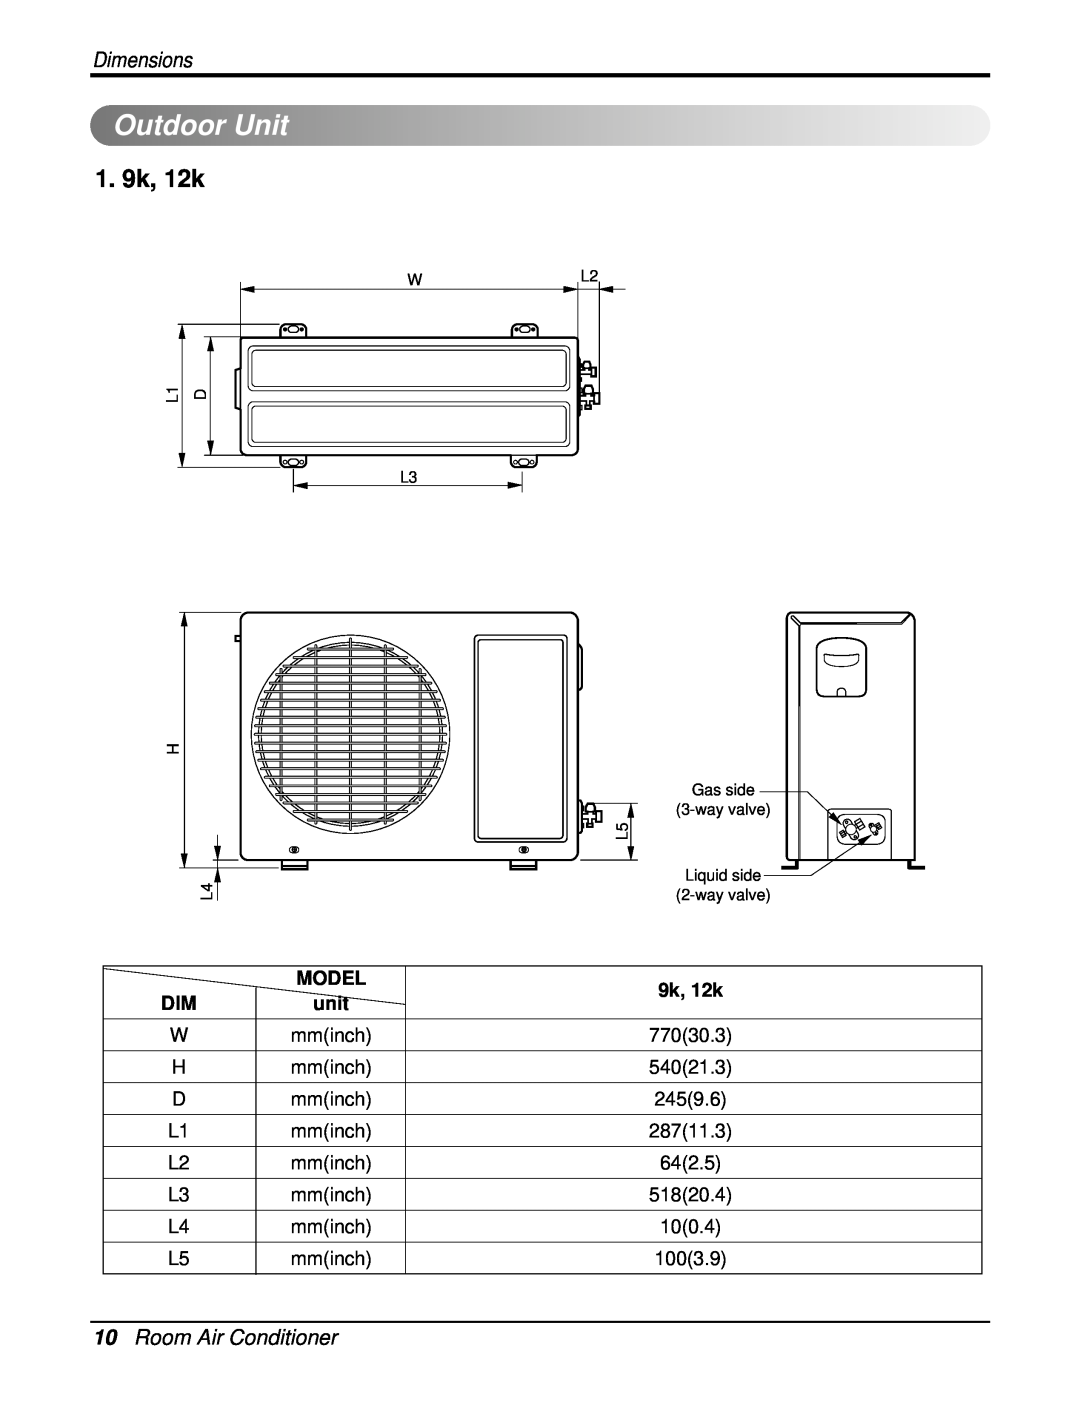 Heat Controller DMC09SB-0, DMC18SB-1, DMC12SB-0 OutdoorUnit, 1. 9k, 12k, 10Room Air Conditioner, Dimensions, Model, unit 